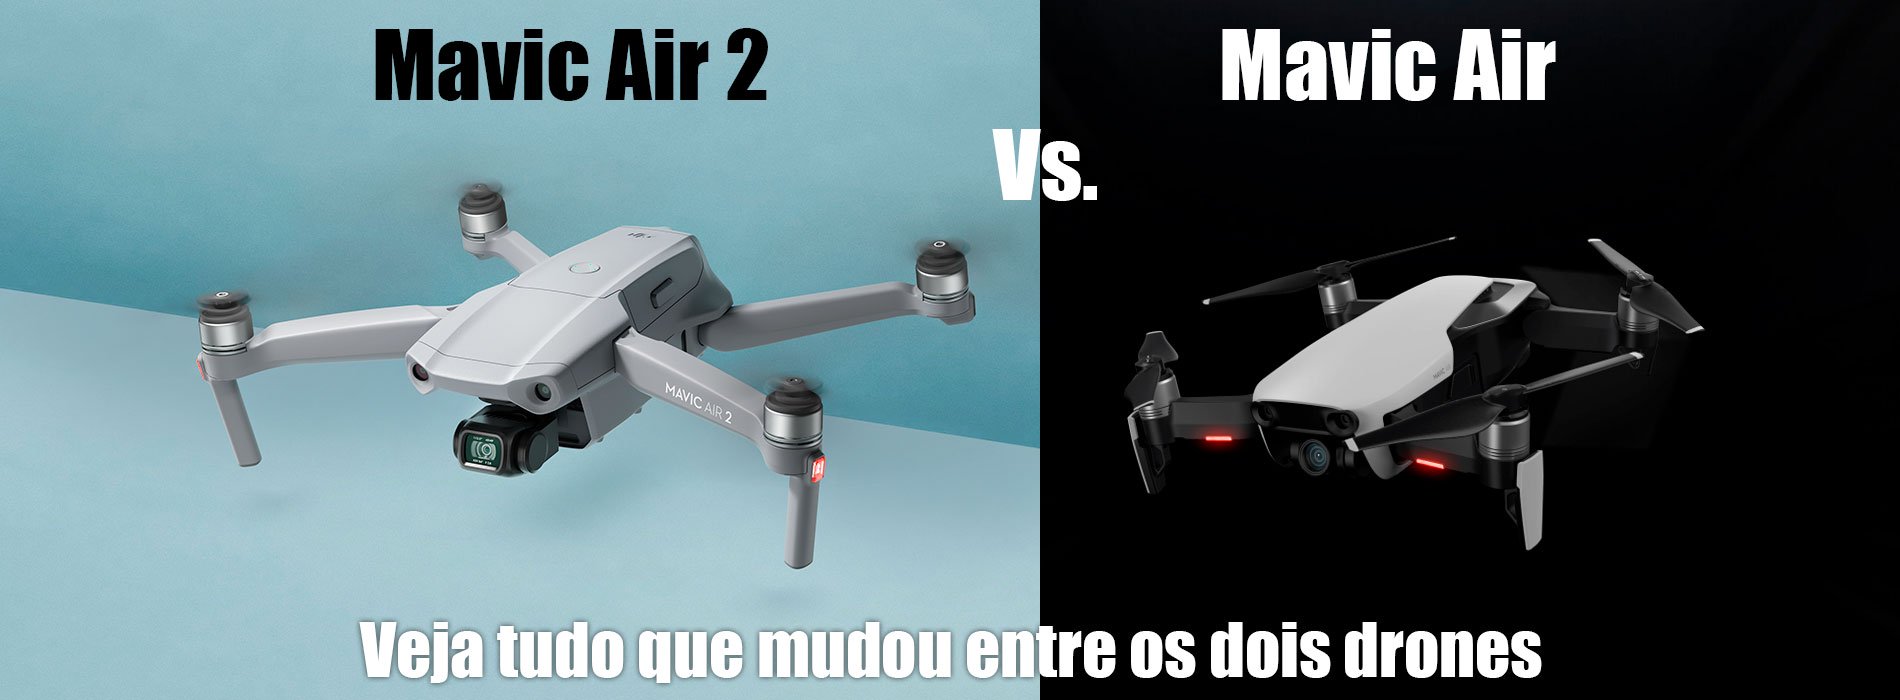 Mavic Air 2 vs Mavic Air - Pelos mesmos $799 novo drone é MUITO superior